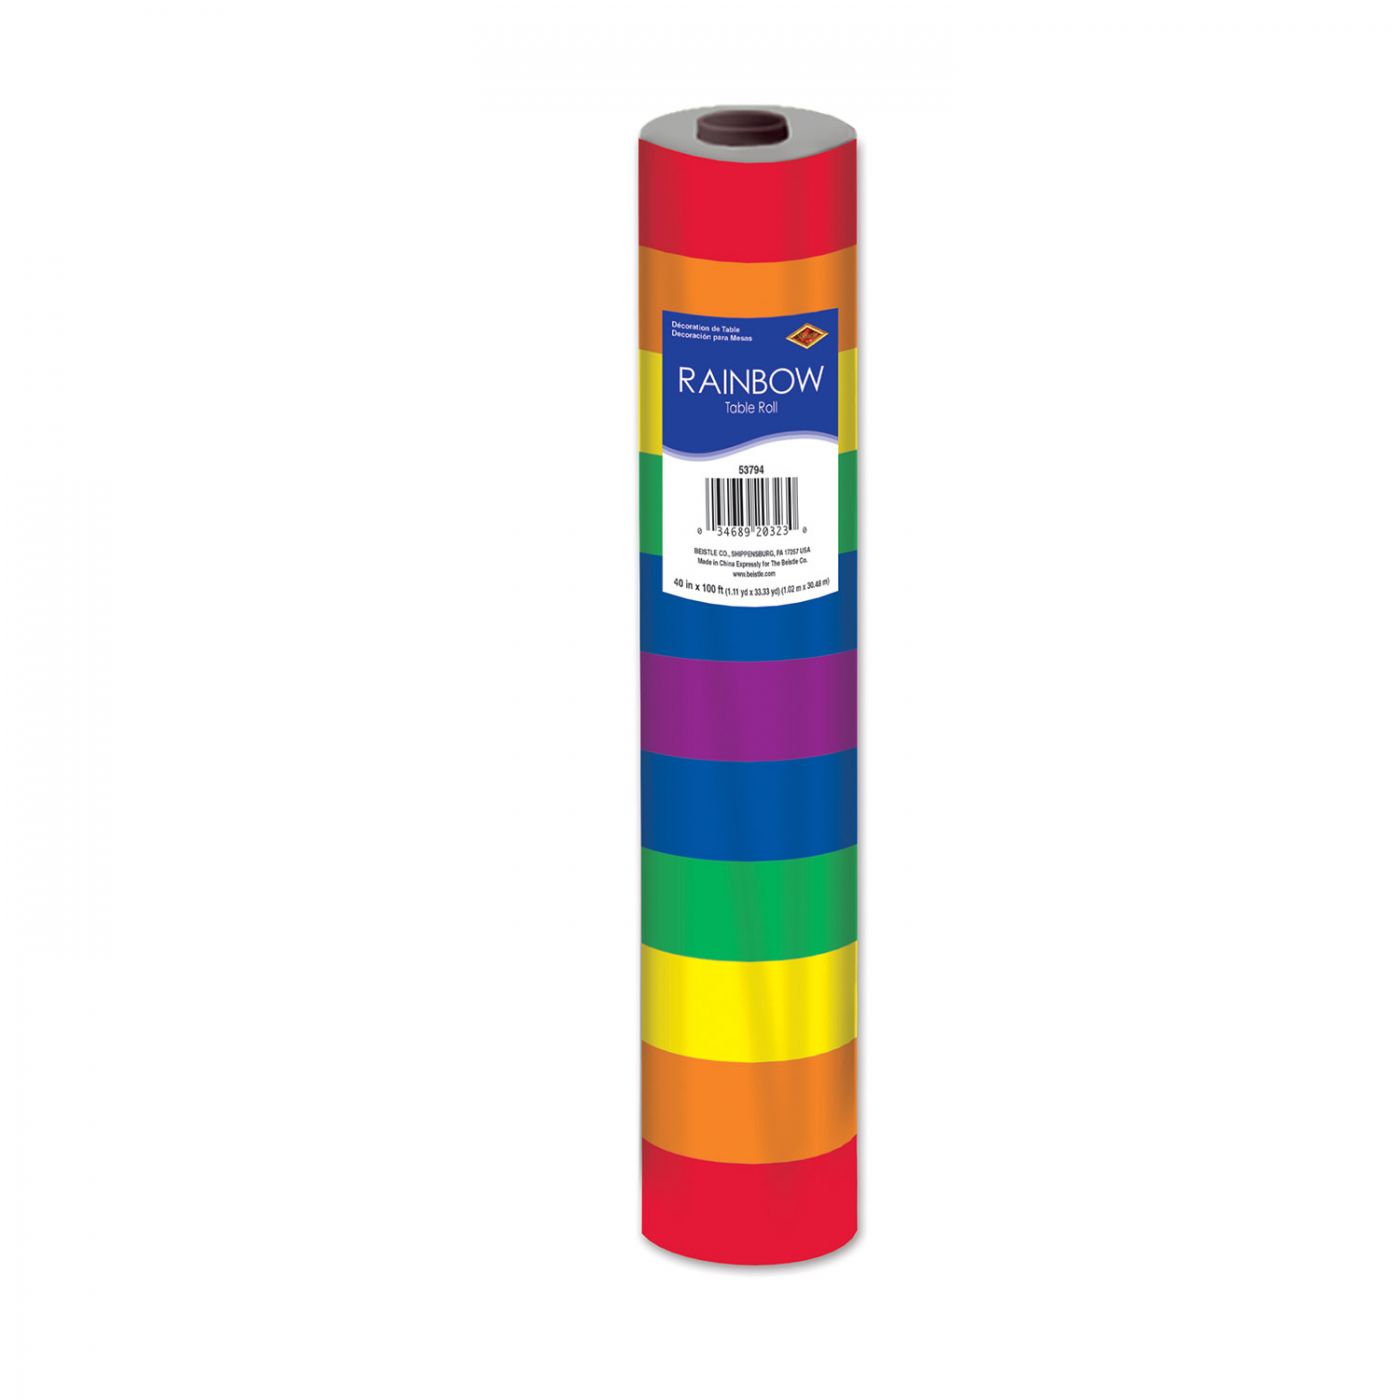 Rainbow Table Roll (1) image